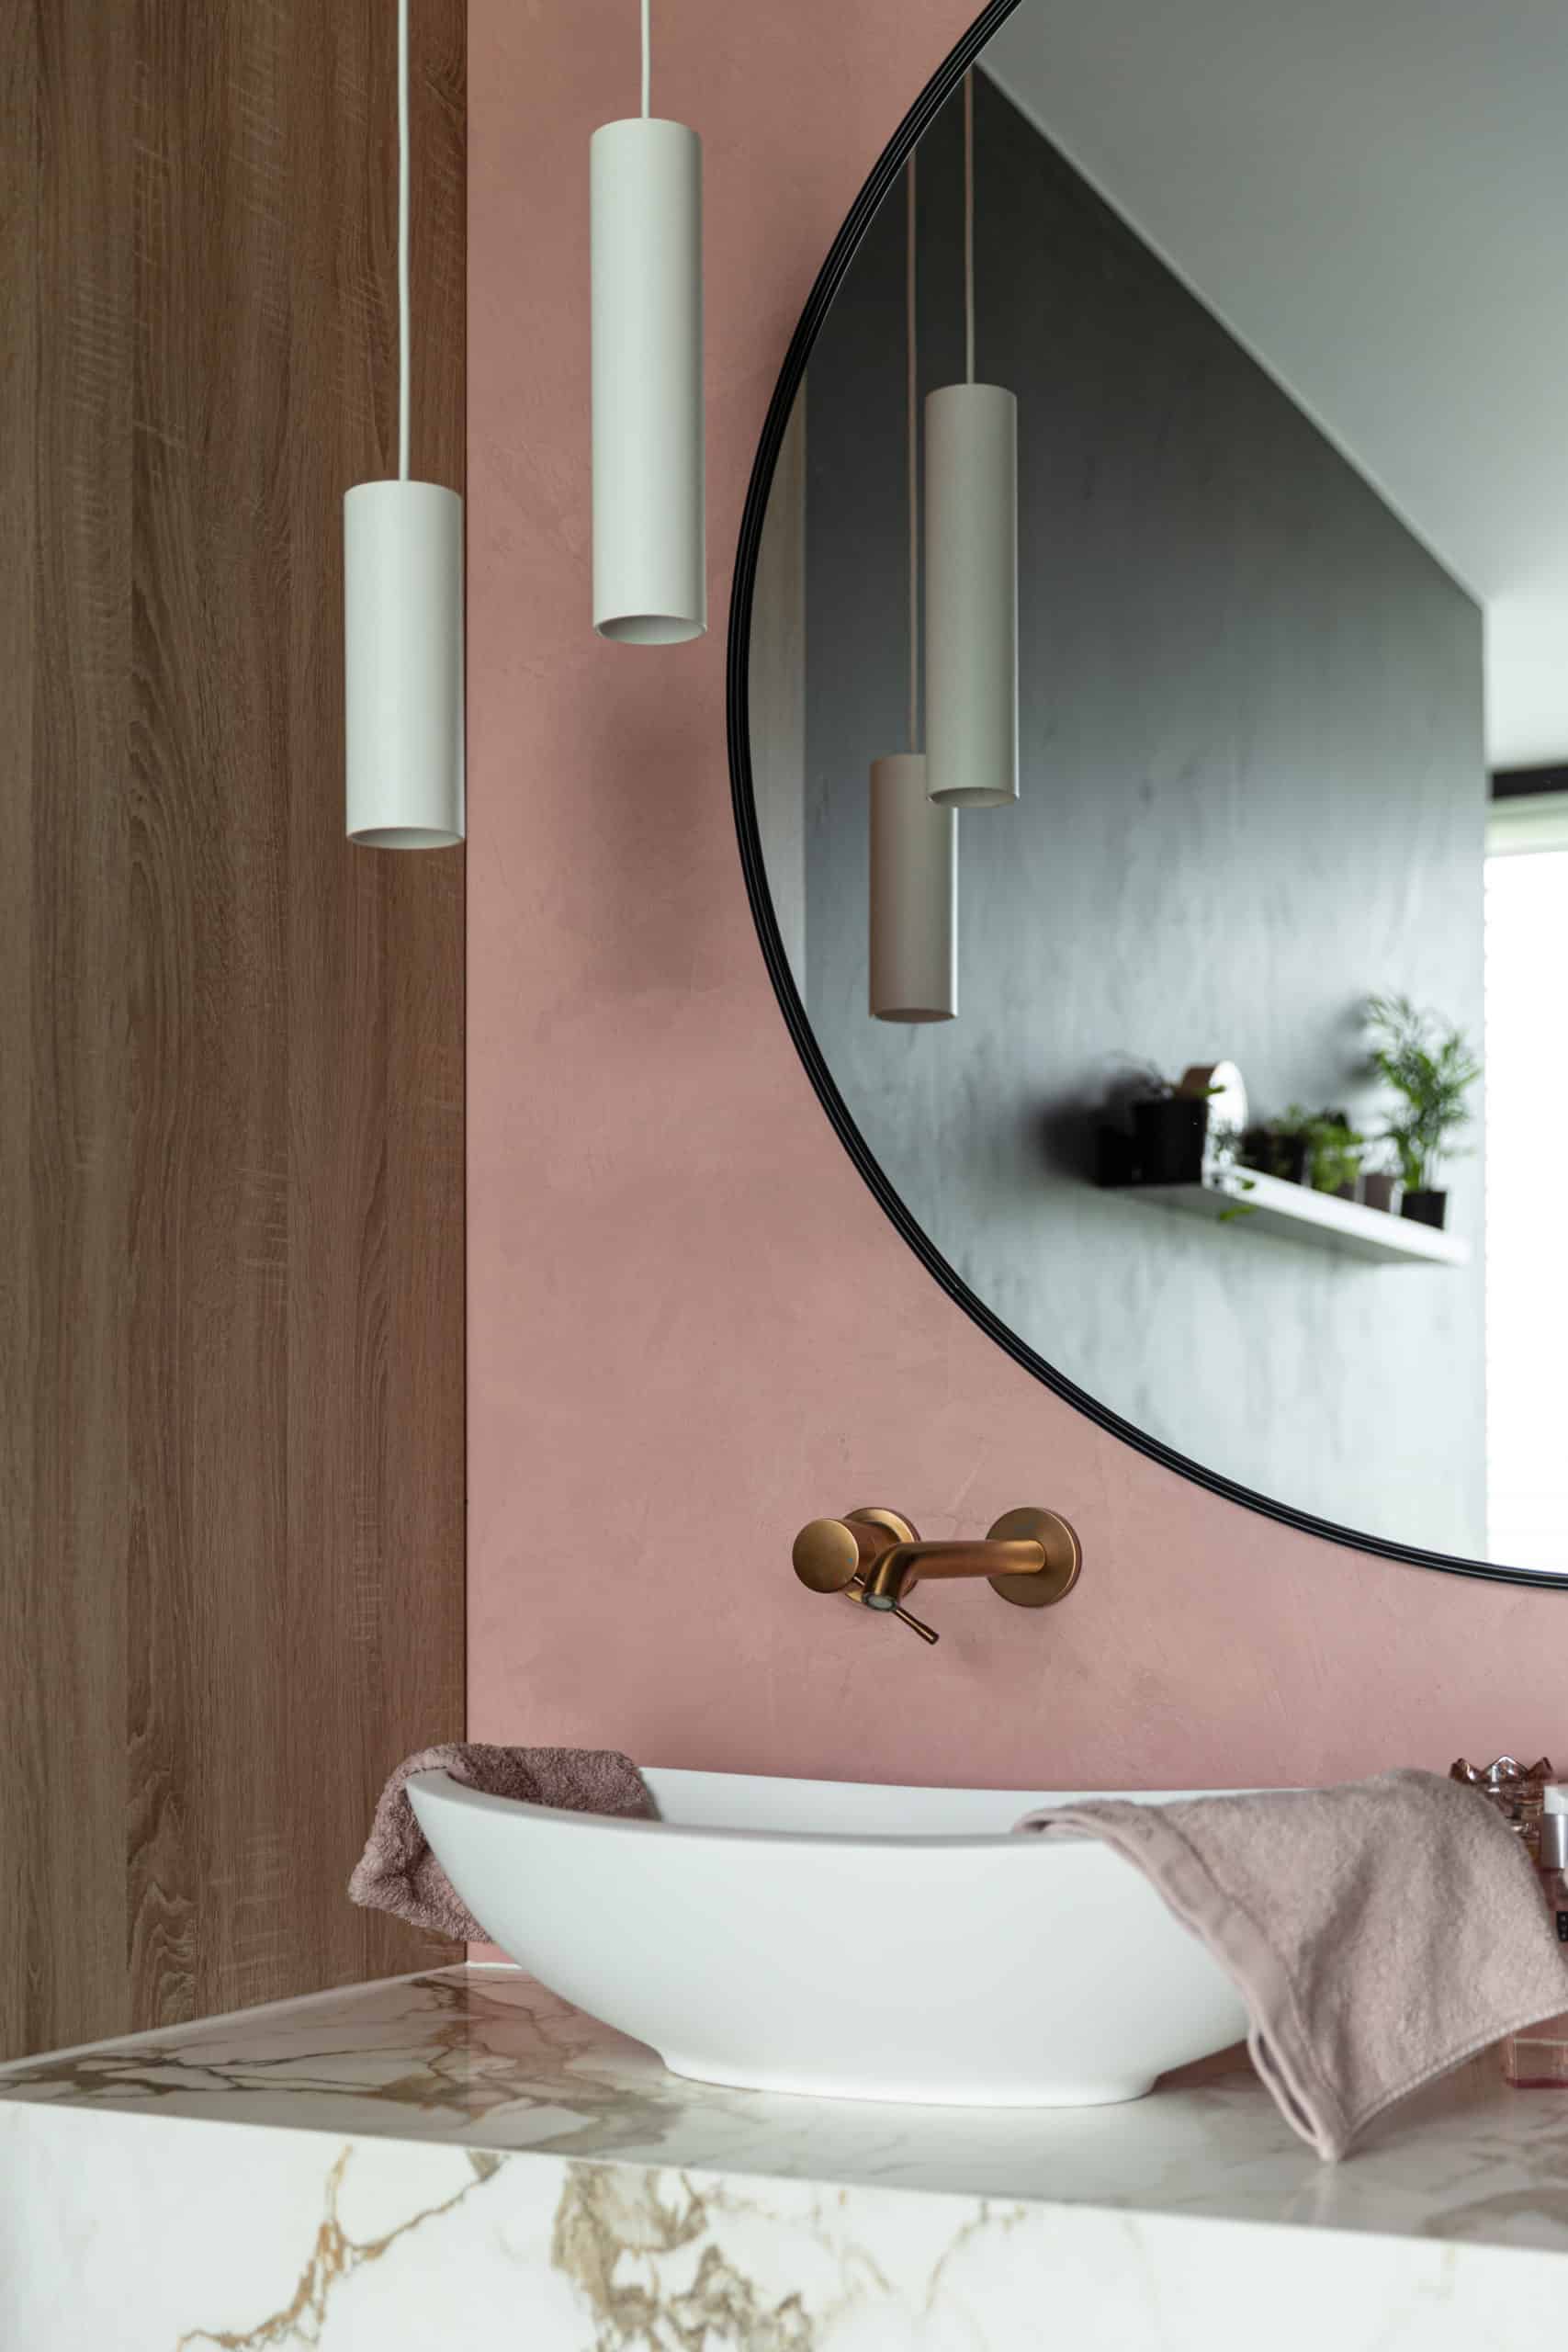 Beton ciré muur in een roze kleur in de badkamer, gecombineerd met een marmeren wastafelblad;